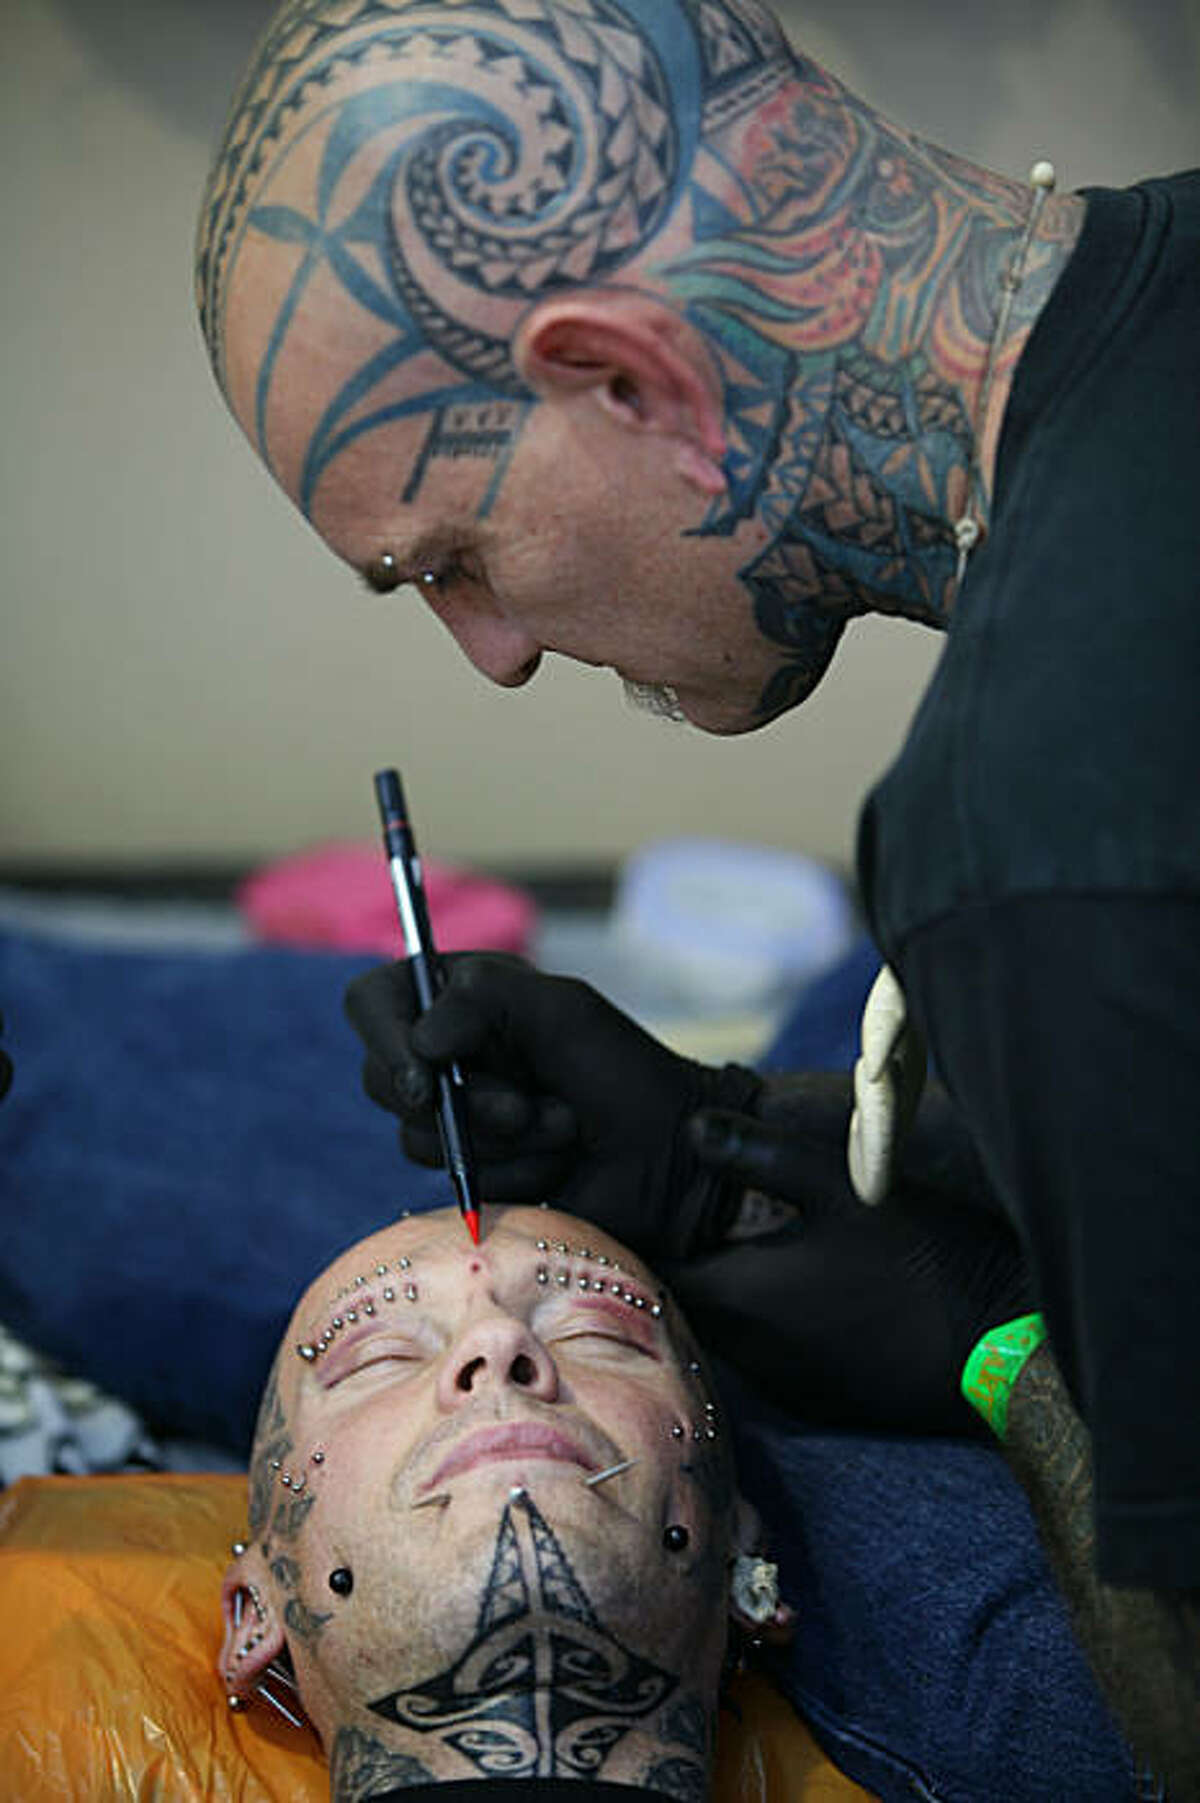 Steve The Tattooist | East London Tattoo Artist | Home